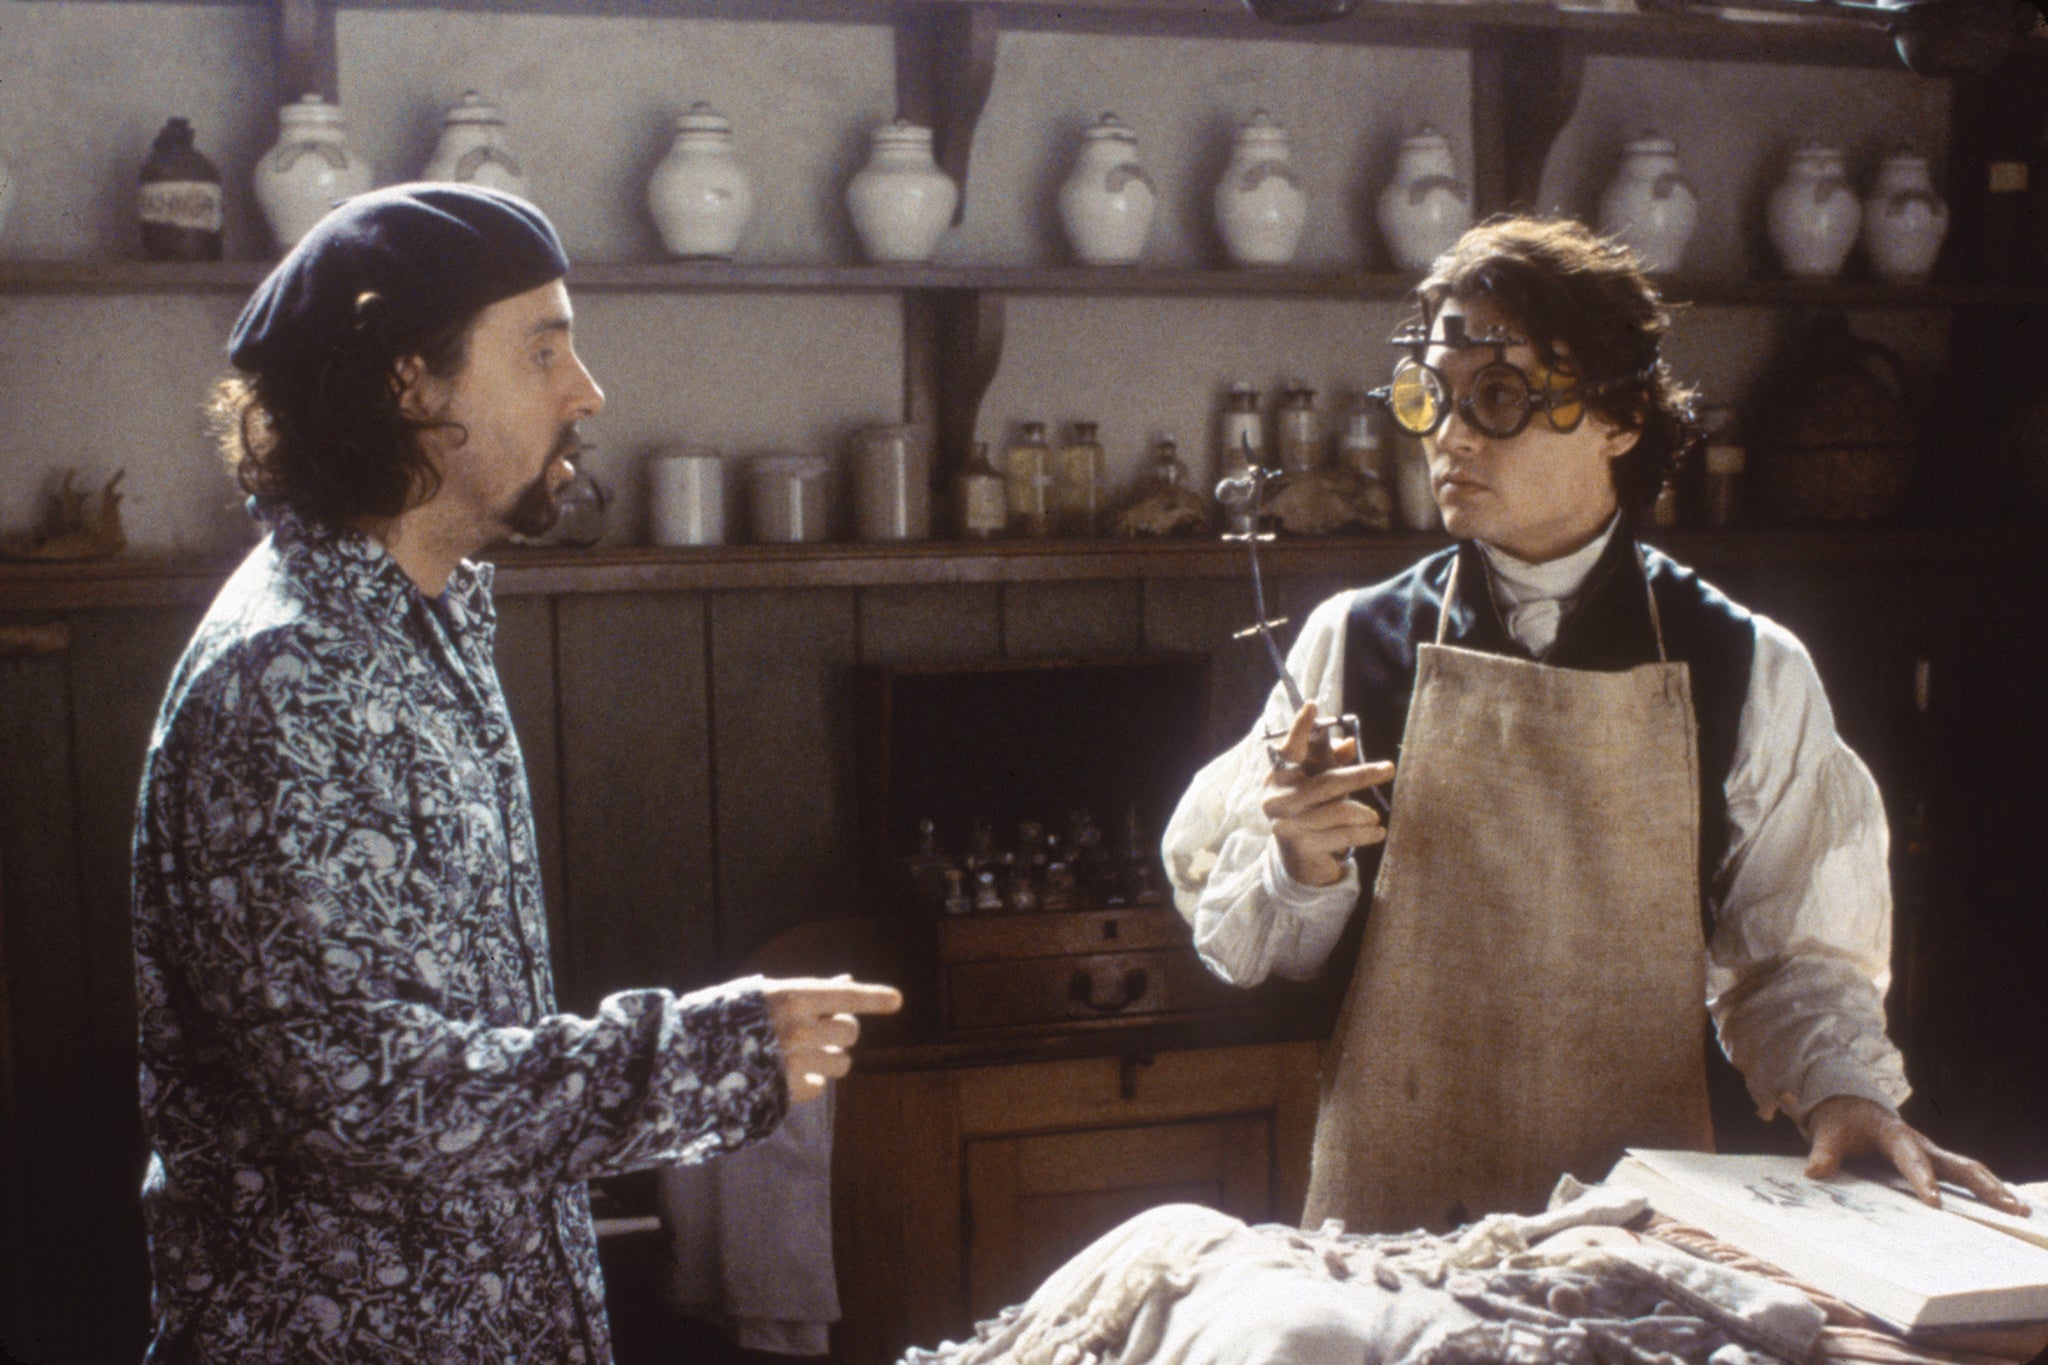 Amigos de toda la vida: Burton dirige a Johnny Depp en el rodaje de ‘La leyenda del jinete sin cabeza’ (1999)